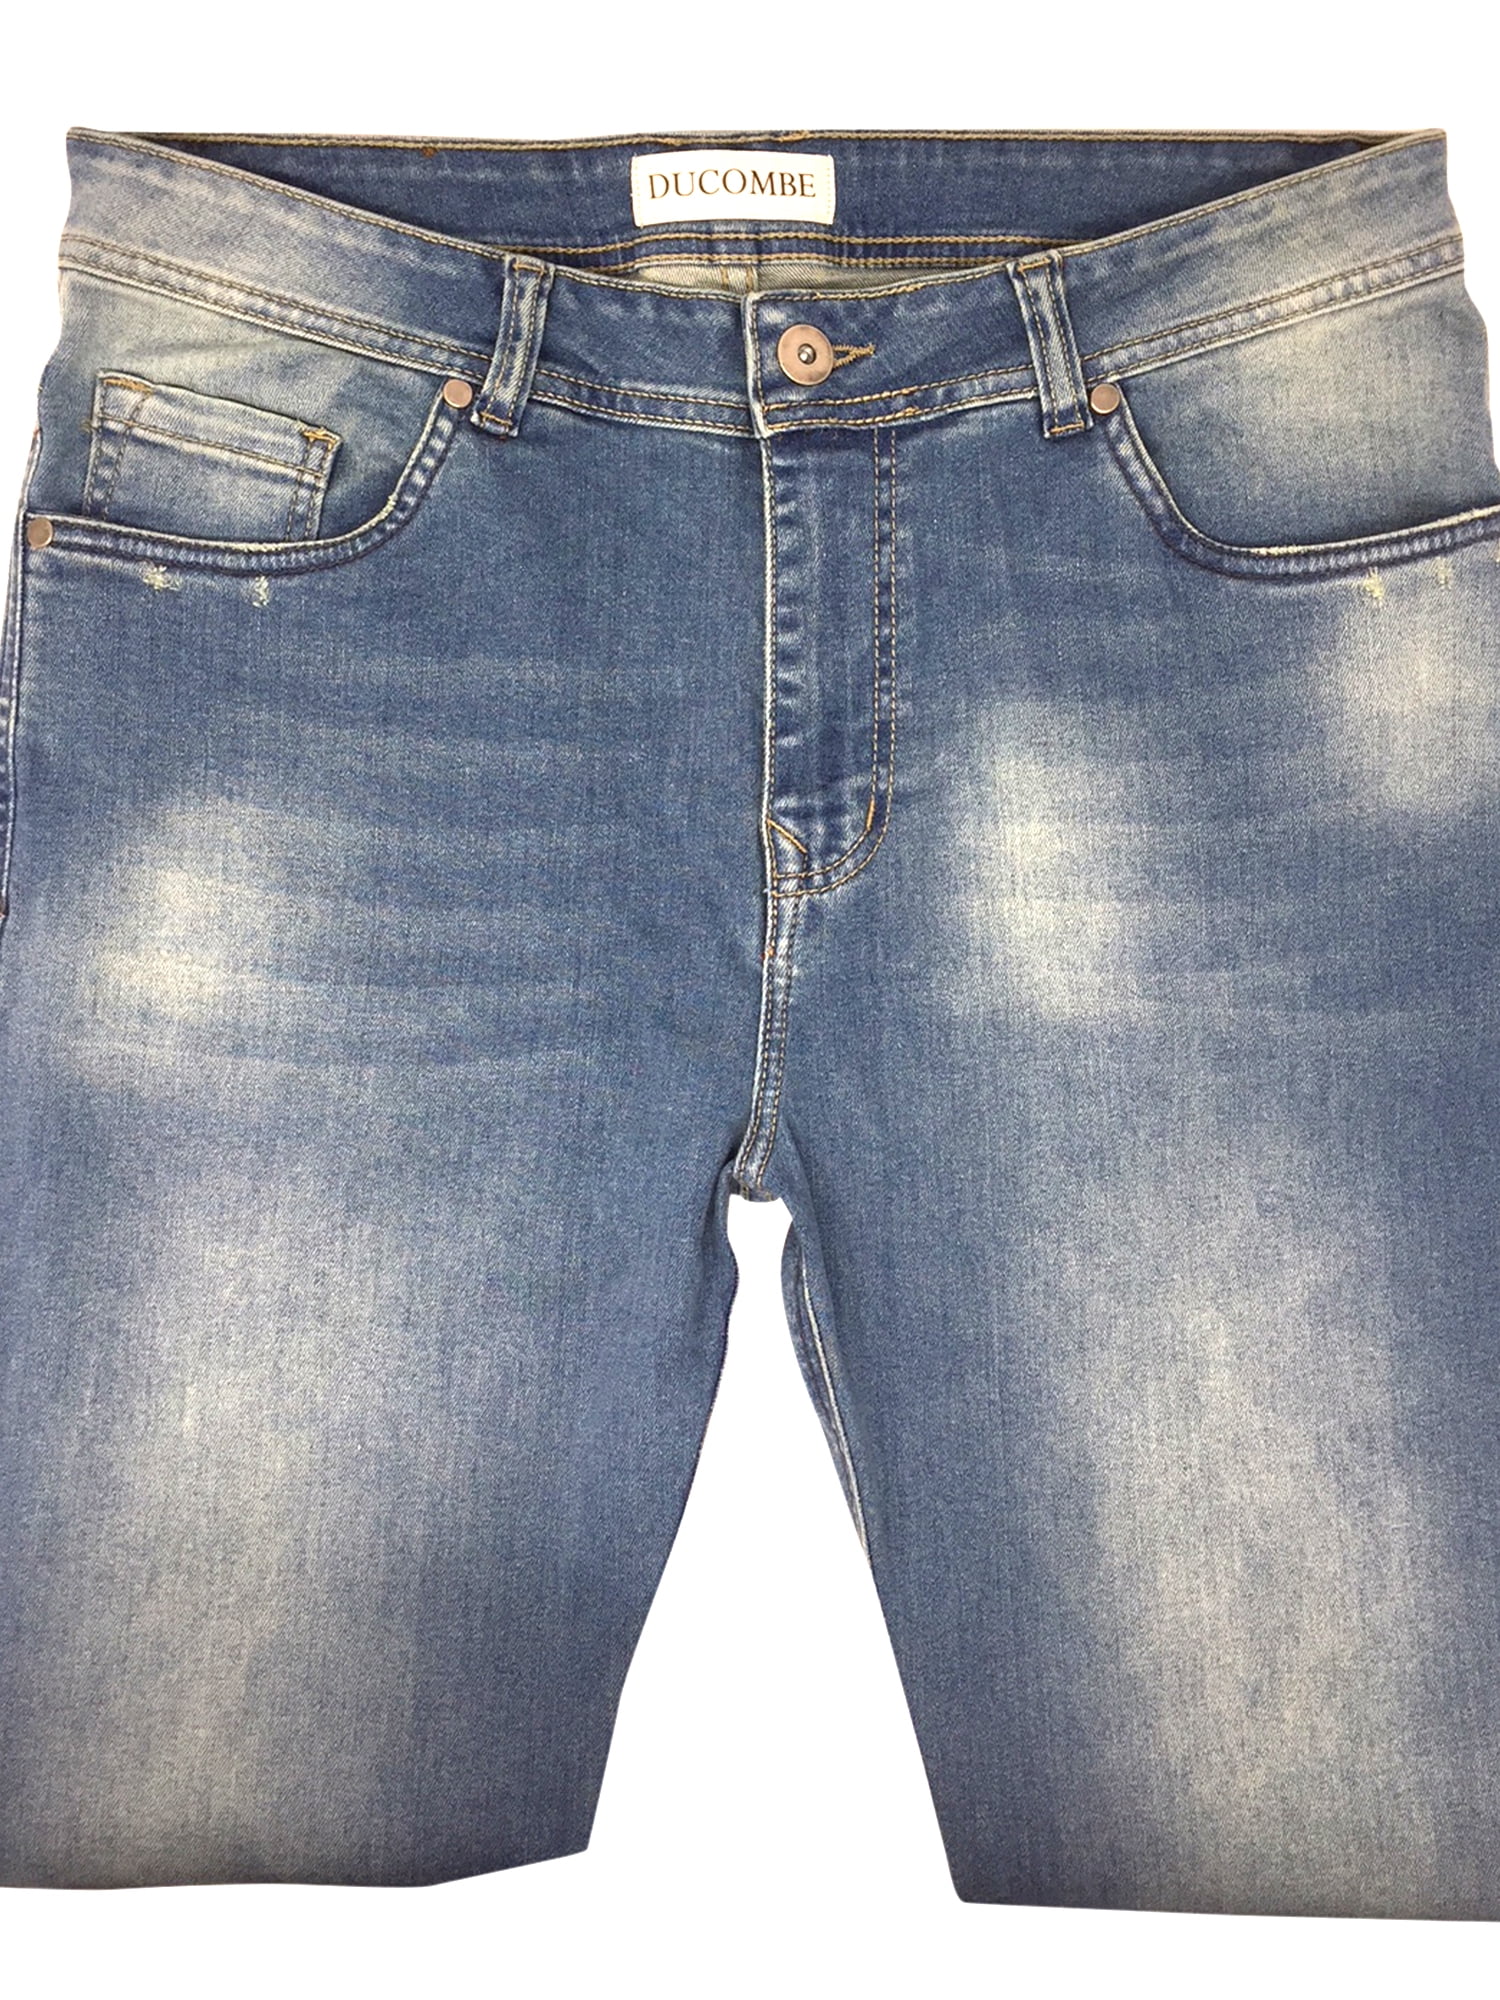 28 inch inside leg jeans mens